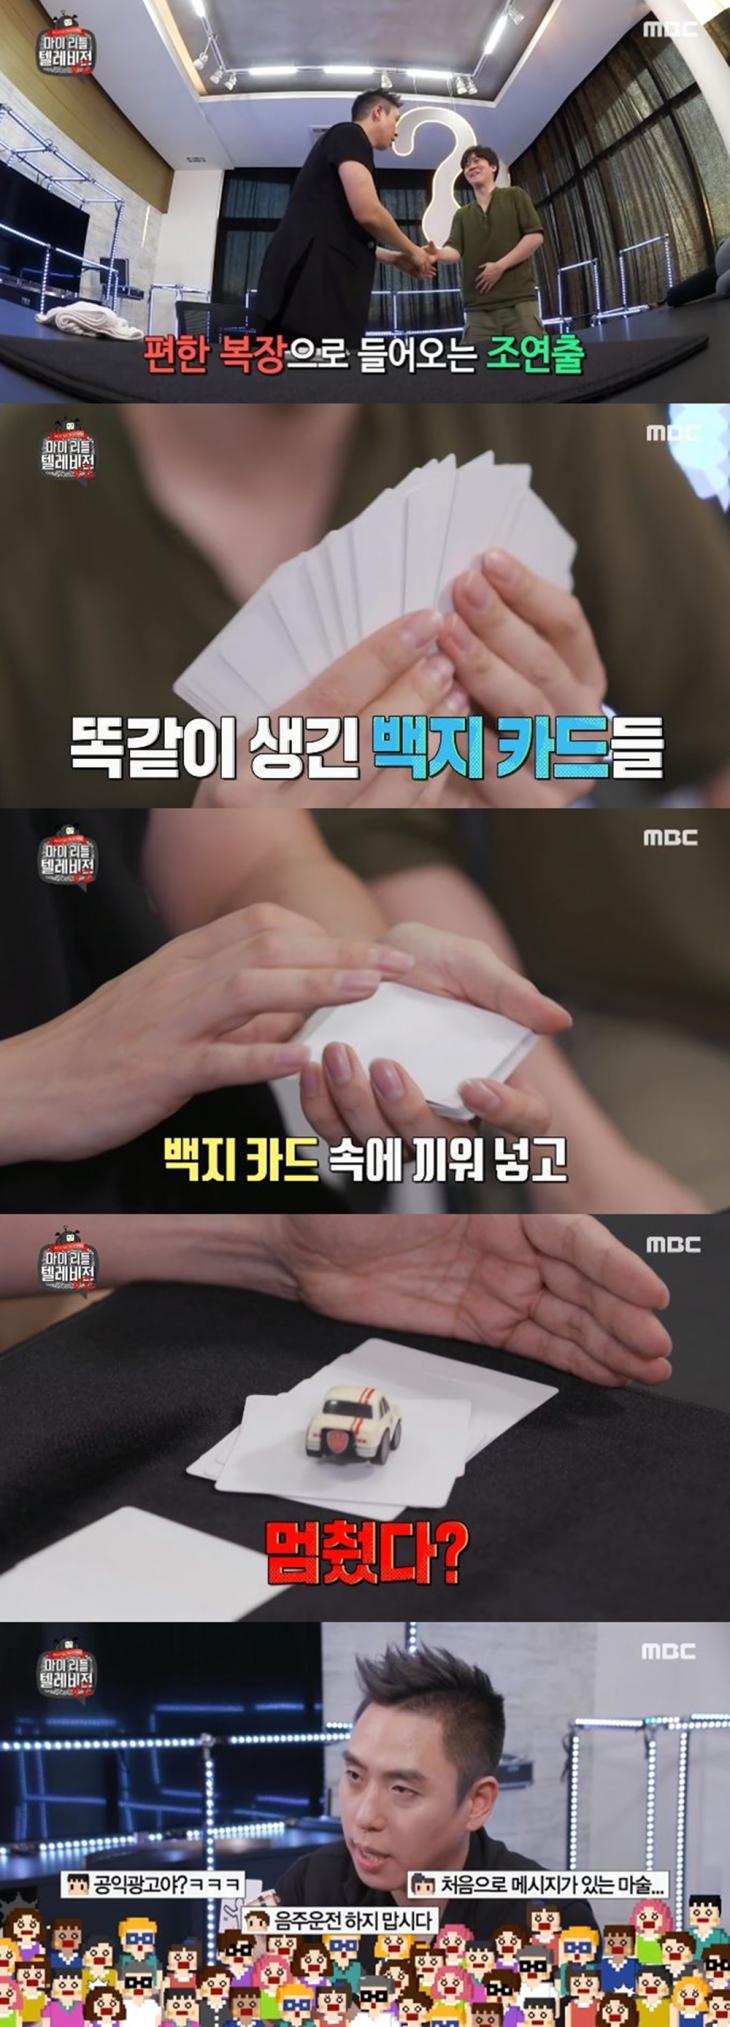 MBC ‘마이 리틀 텔레비전 V2’ 방송 캡처